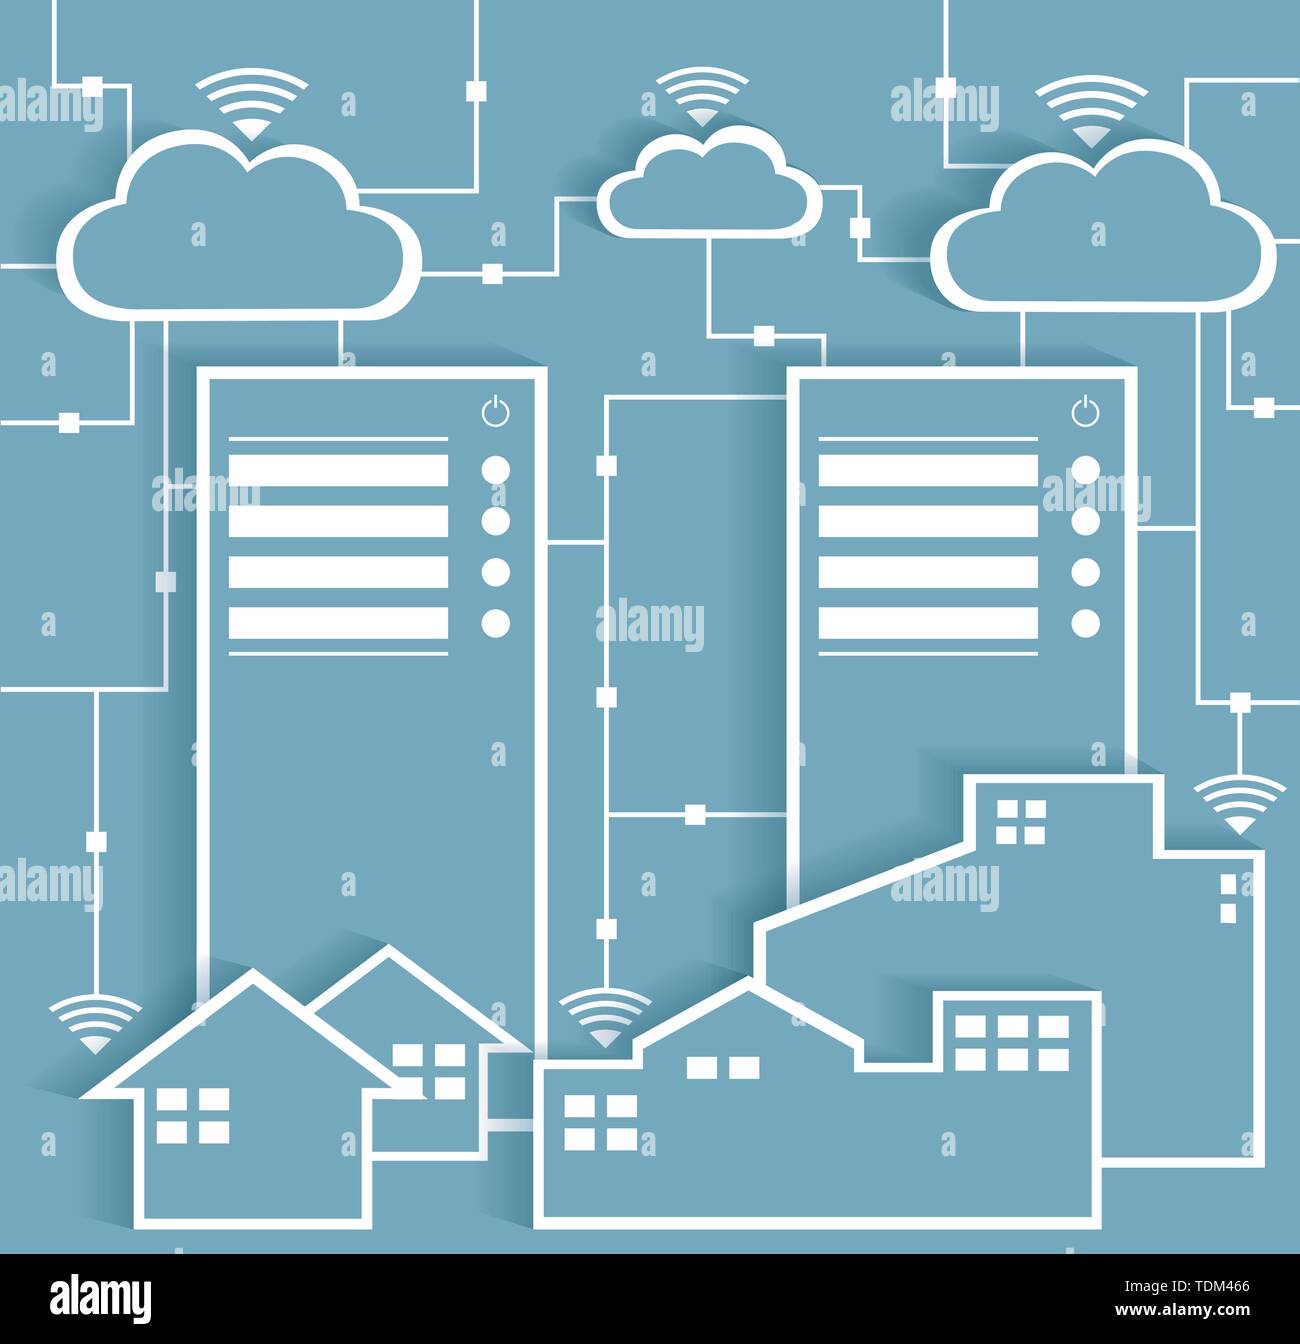 Papier Autocollants Découpe Big Data avec le Cloud Computing concept de connectivité Internet Wifi, EPS10 regroupés et stratifiés Illustration de Vecteur